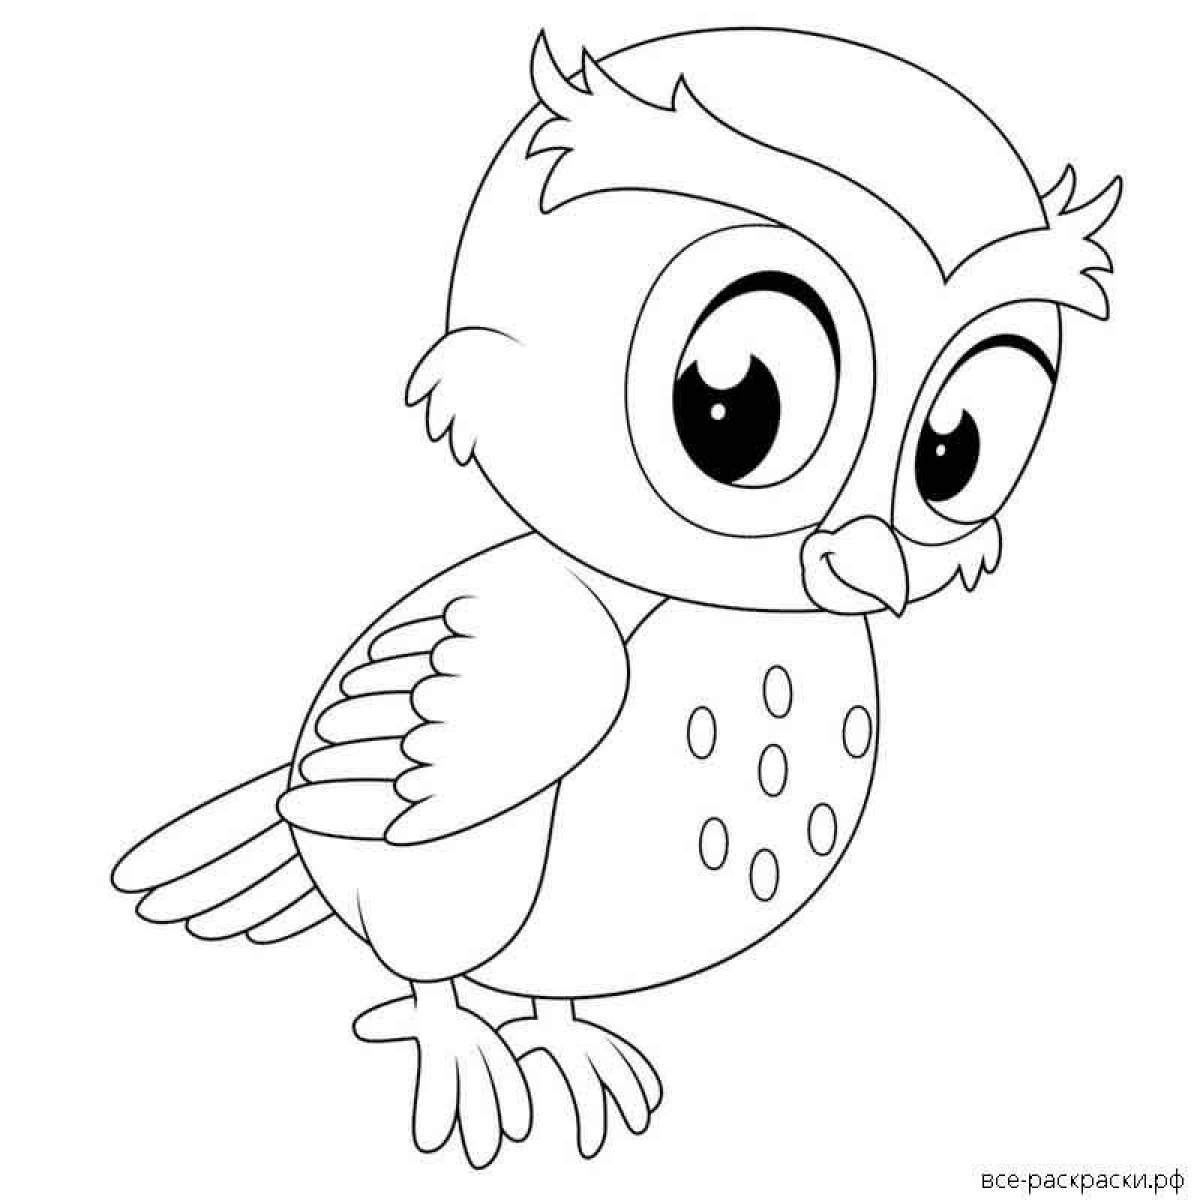 Playful owl coloring book